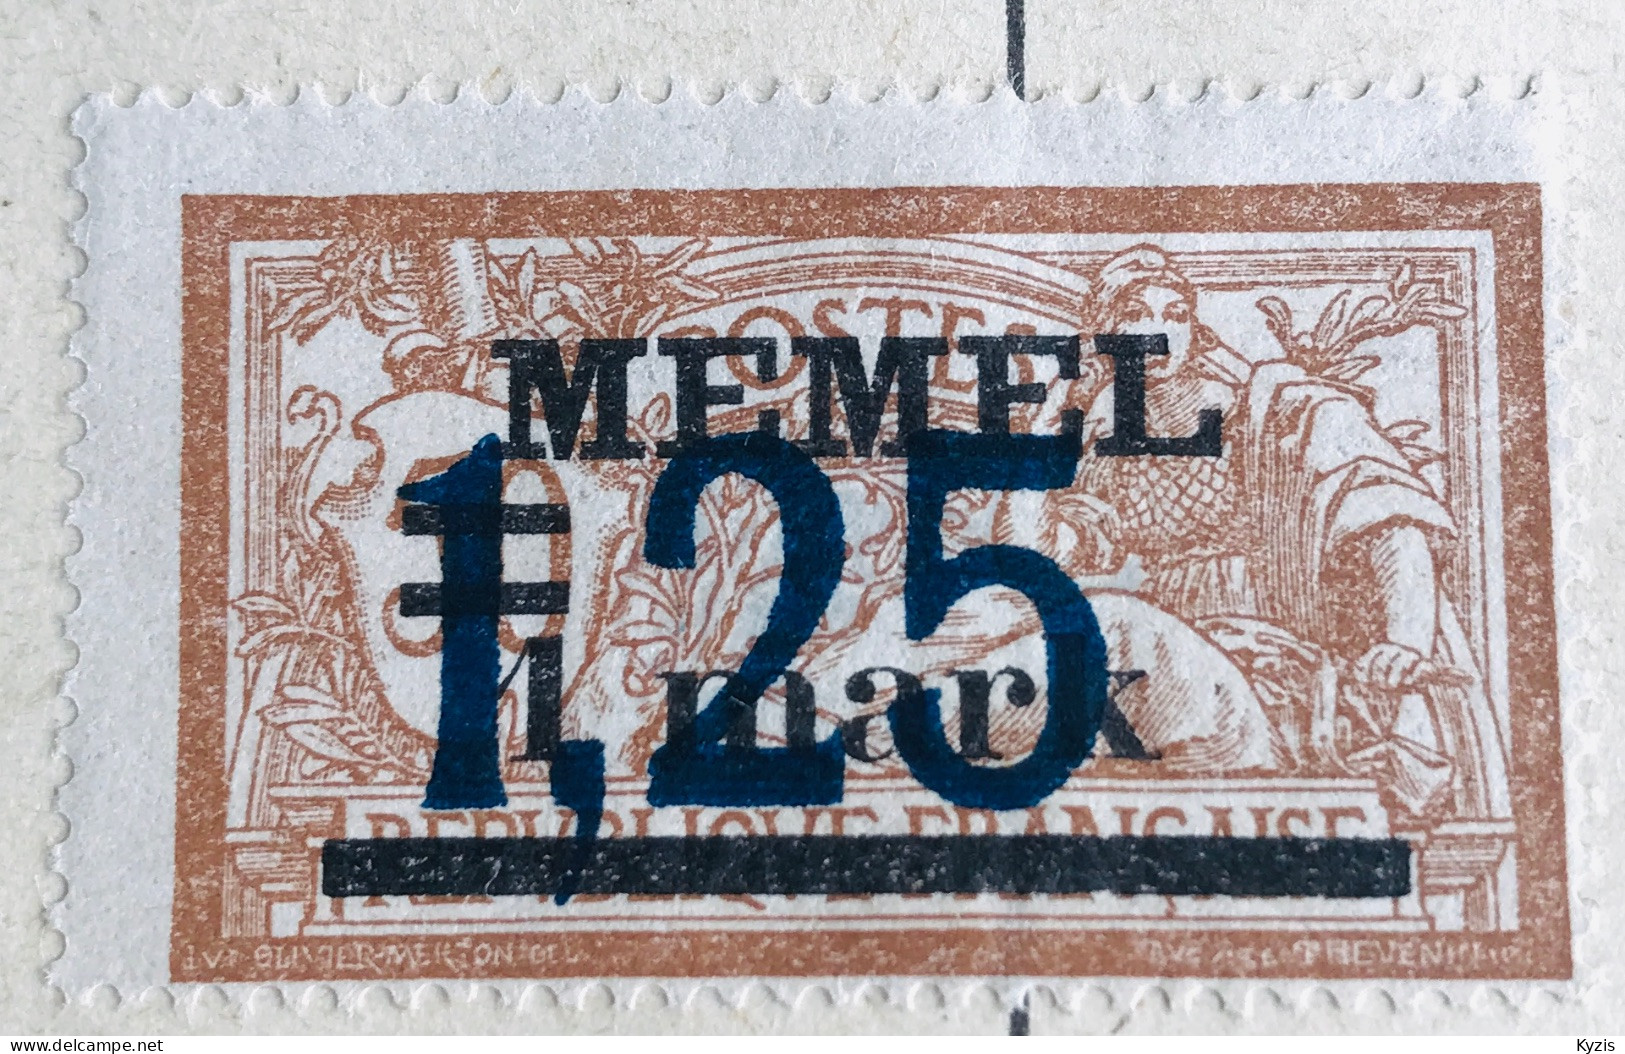 MEMEL - Type Merson, Avec Surcharge Double 1922, MI 50 - CADRE DÉFORMÉ - Neufs